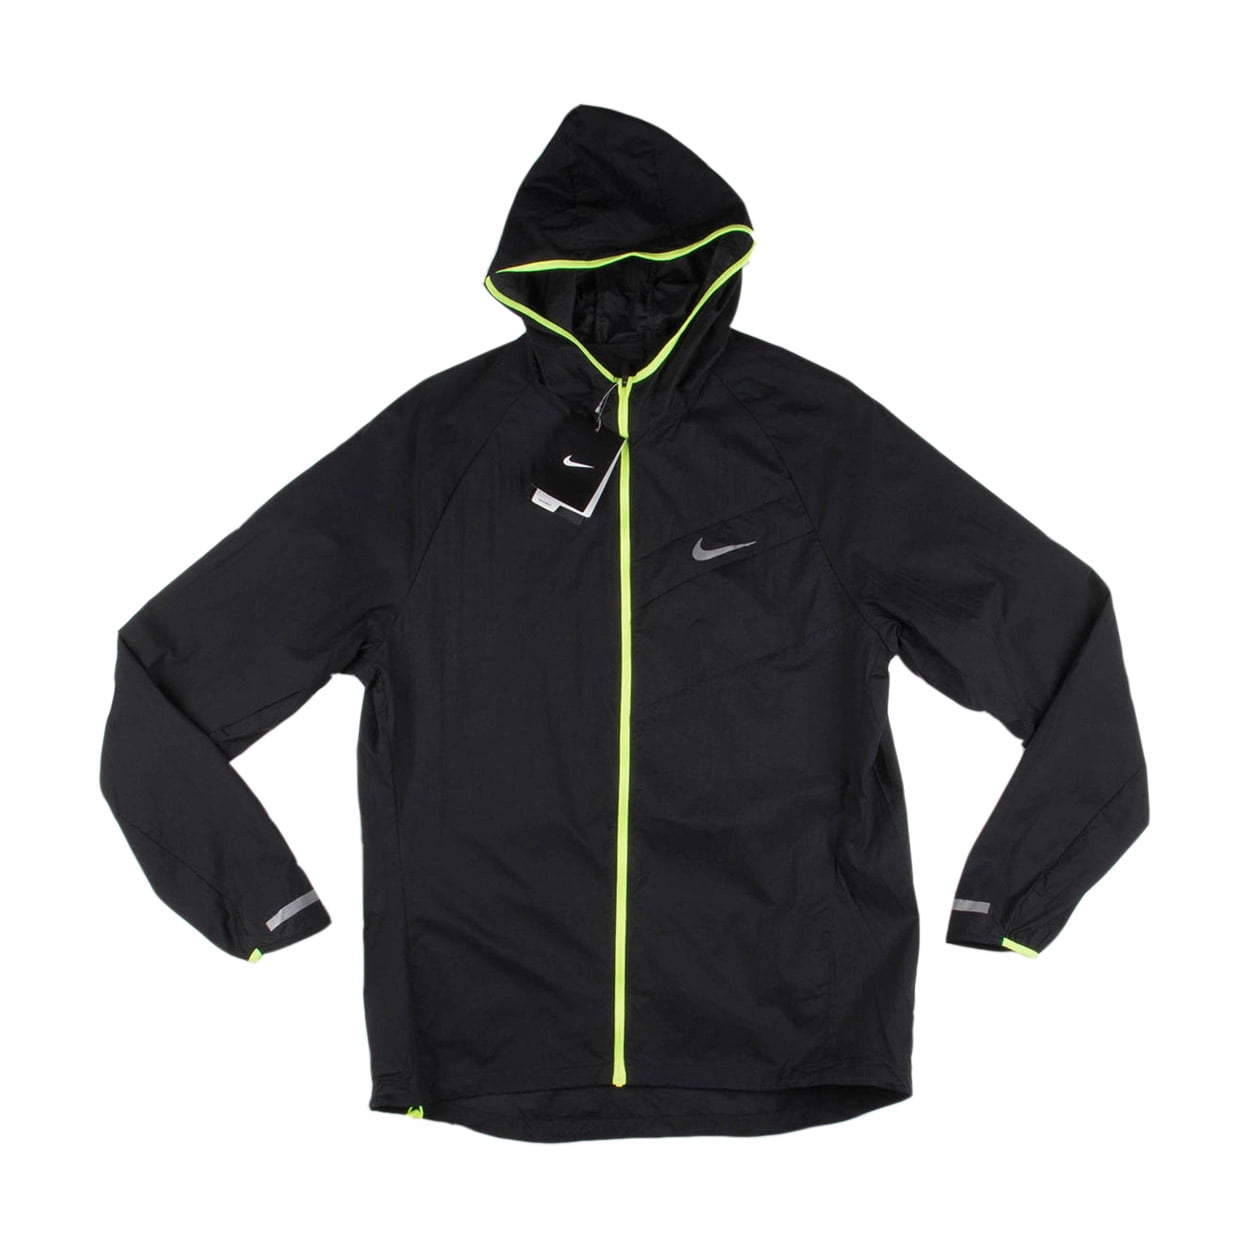 Trottoir uitvinding Schijnen Nike Mens Impossibly Light Running Jacket Black/Volt - Walmart.com